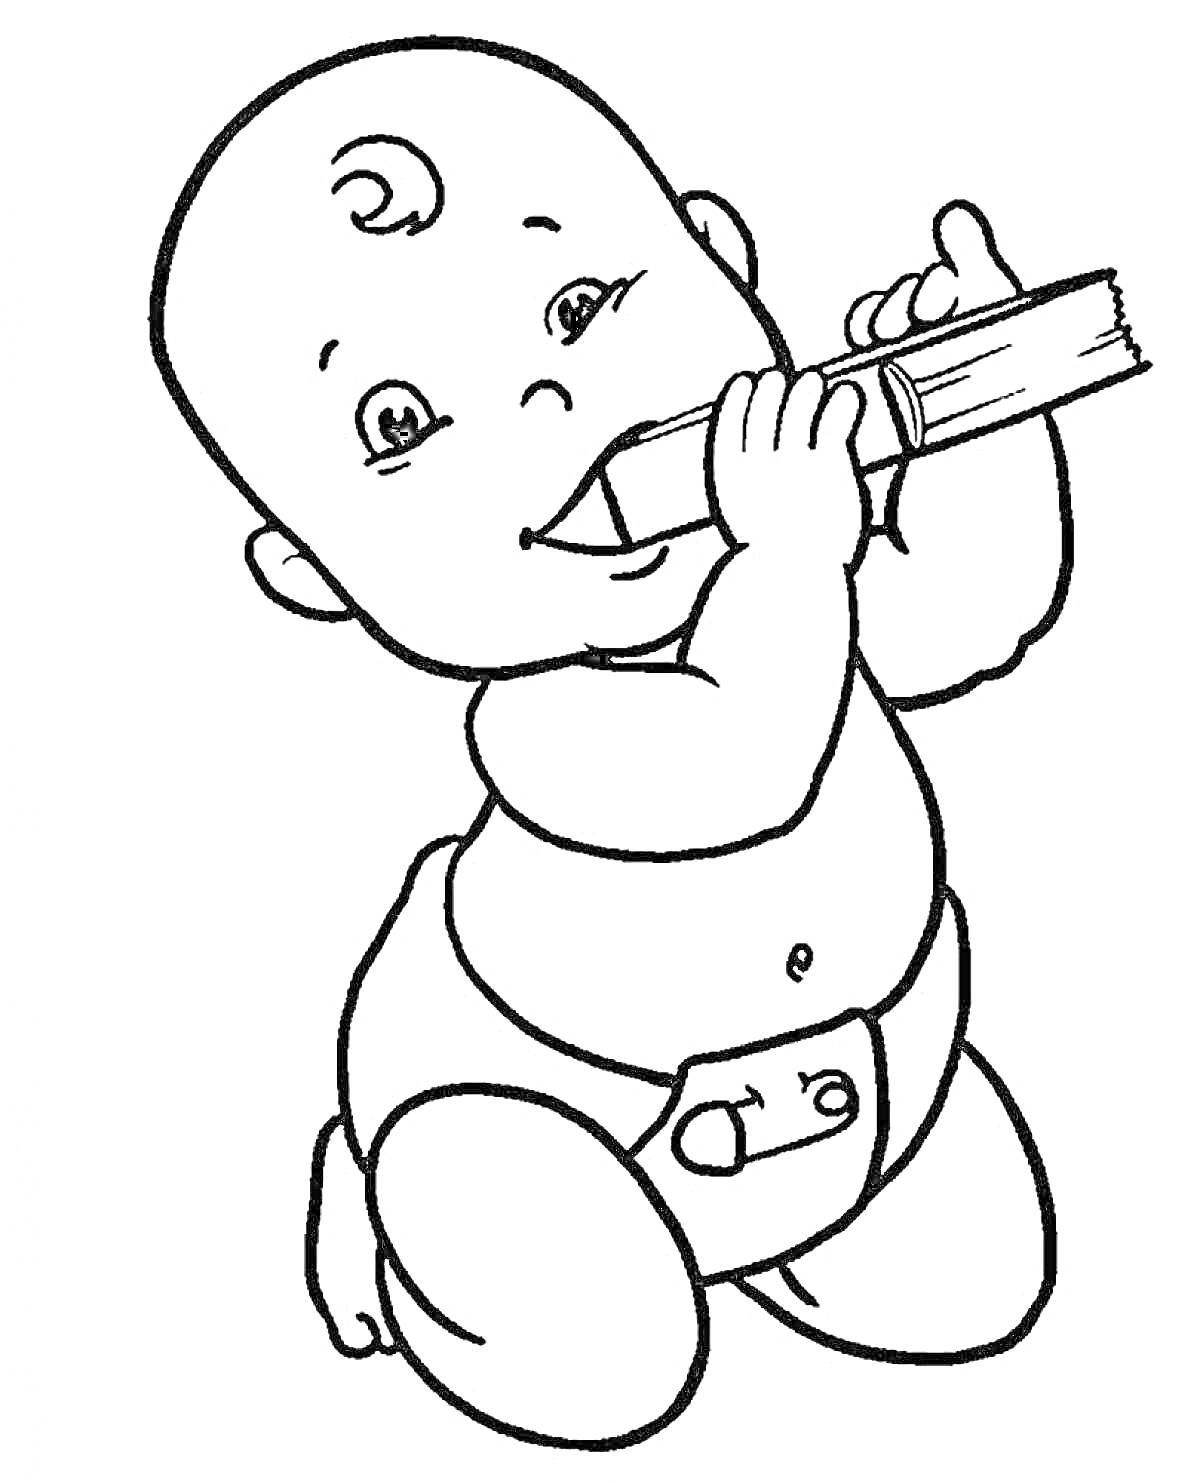 Раскраска Малыш в подгузнике с курчавыми волосами играет с зубной щеткой